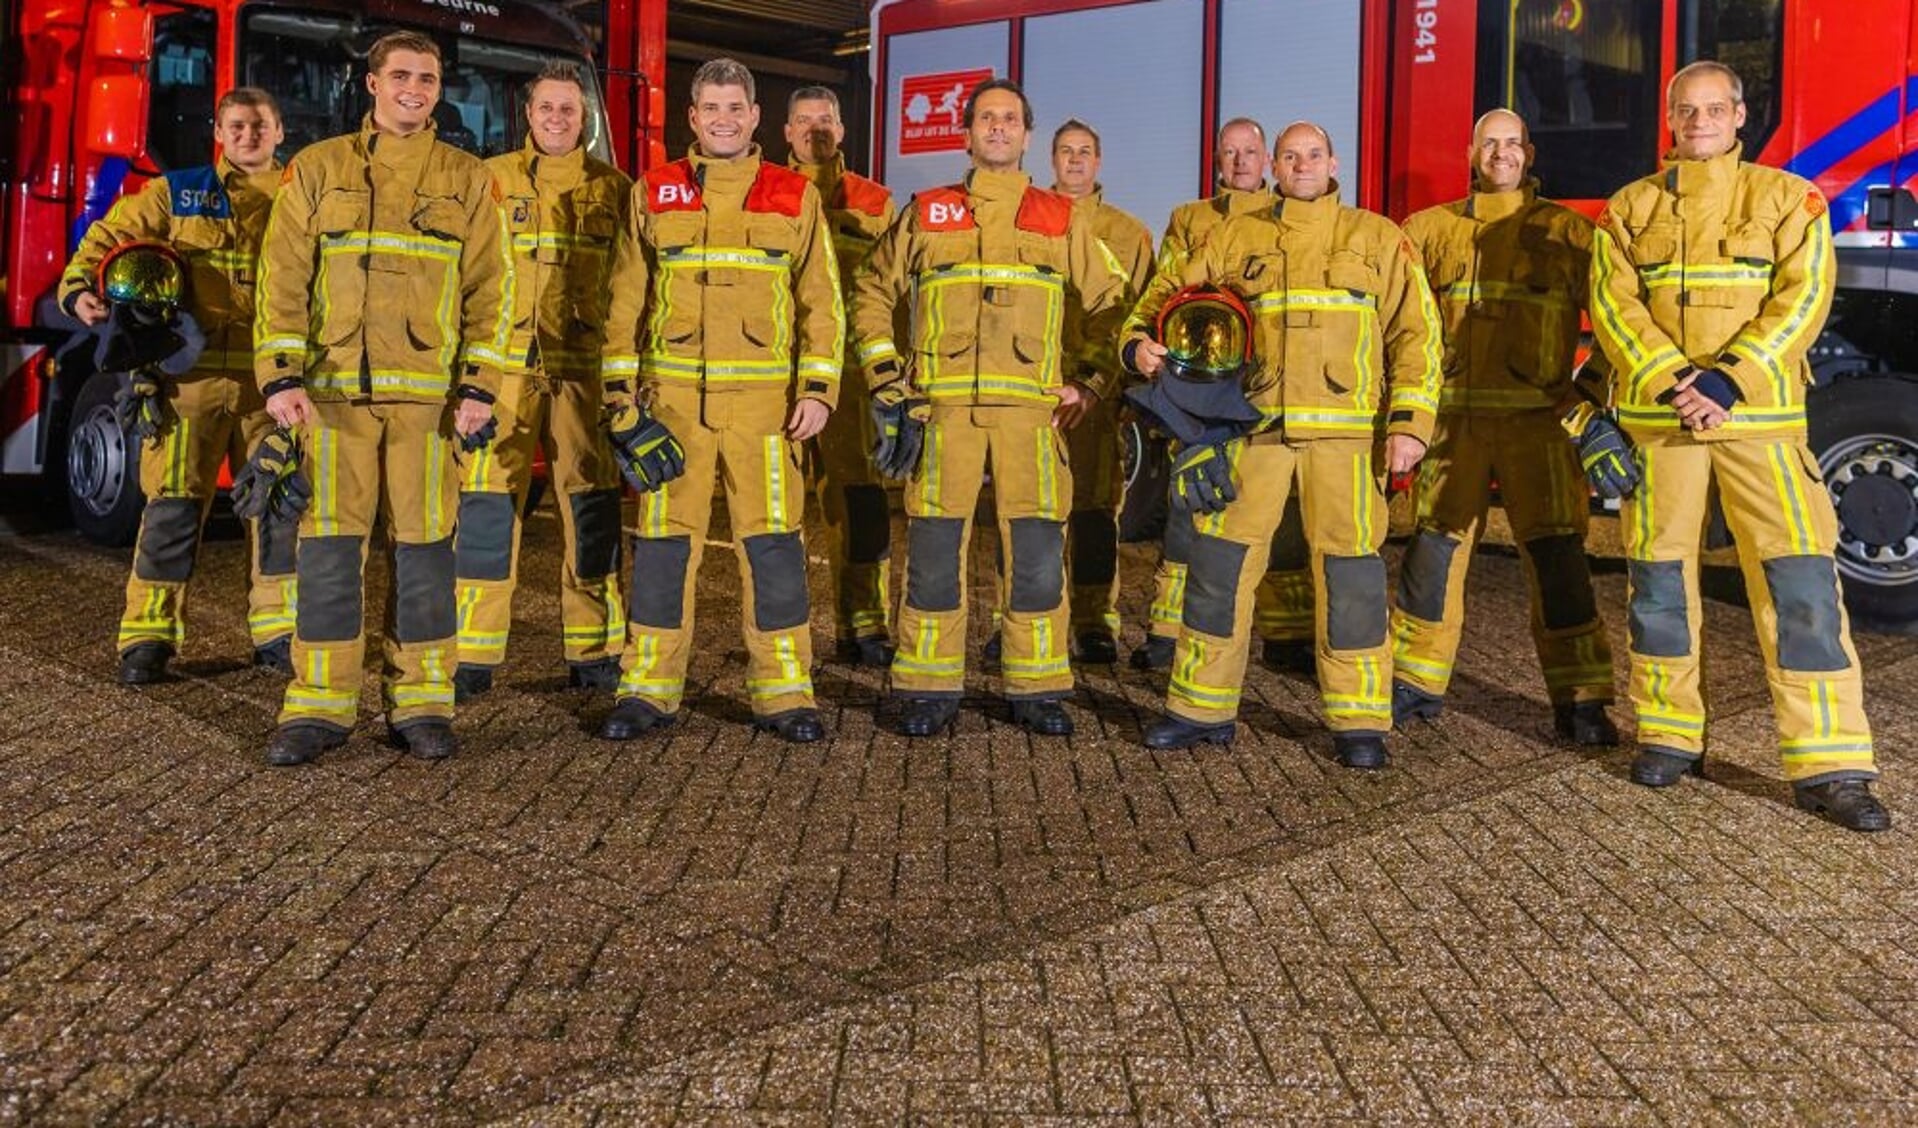 Het team in Deurne bestaat uit 27 vrijwilligers en is op zoek naar nieuwe leden om de brandweerpost te versterken.